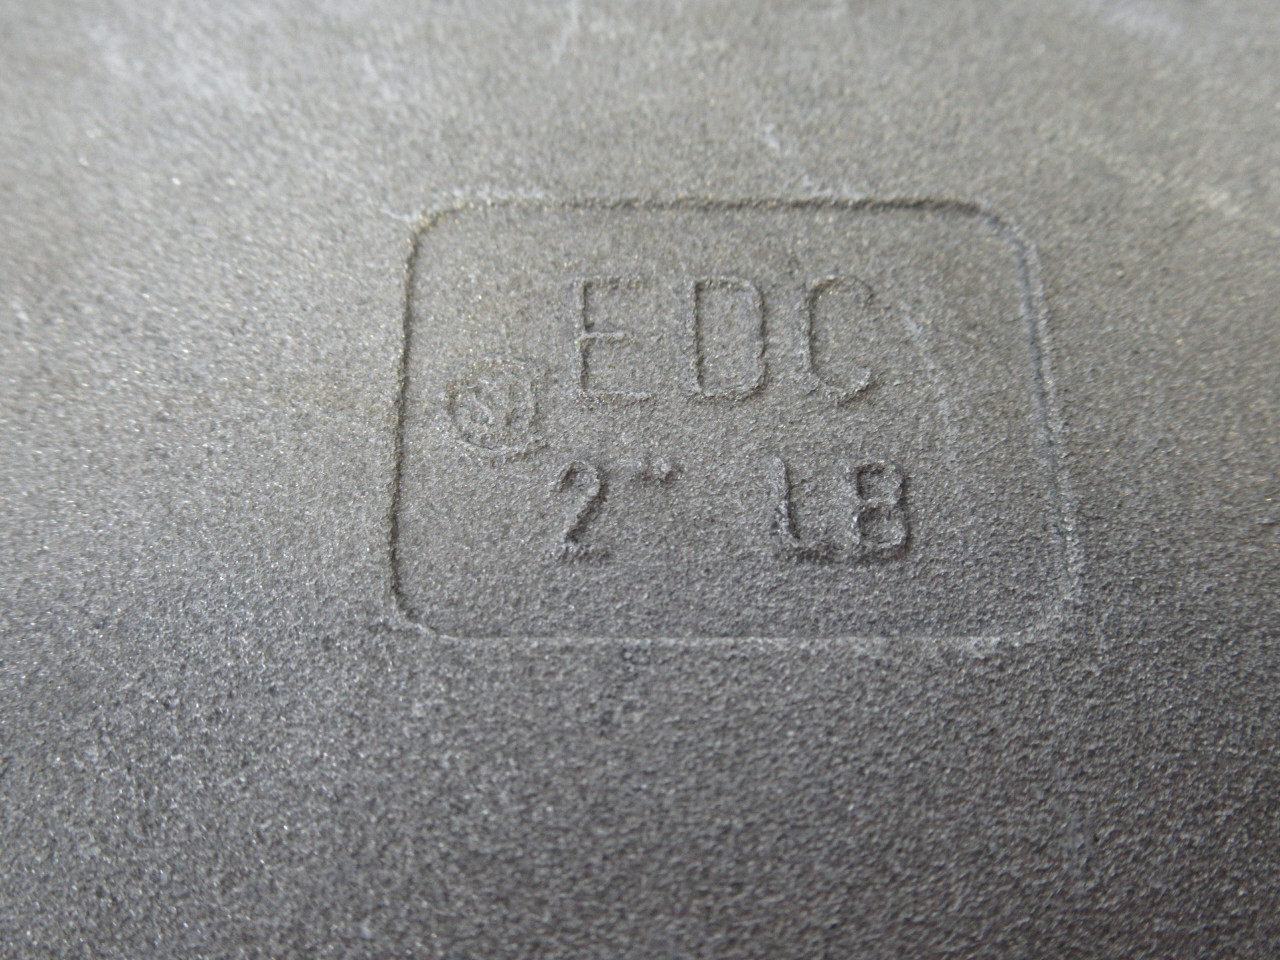 EDC 2-LB 2 Inch LB Conduit Body w/o Cover USED